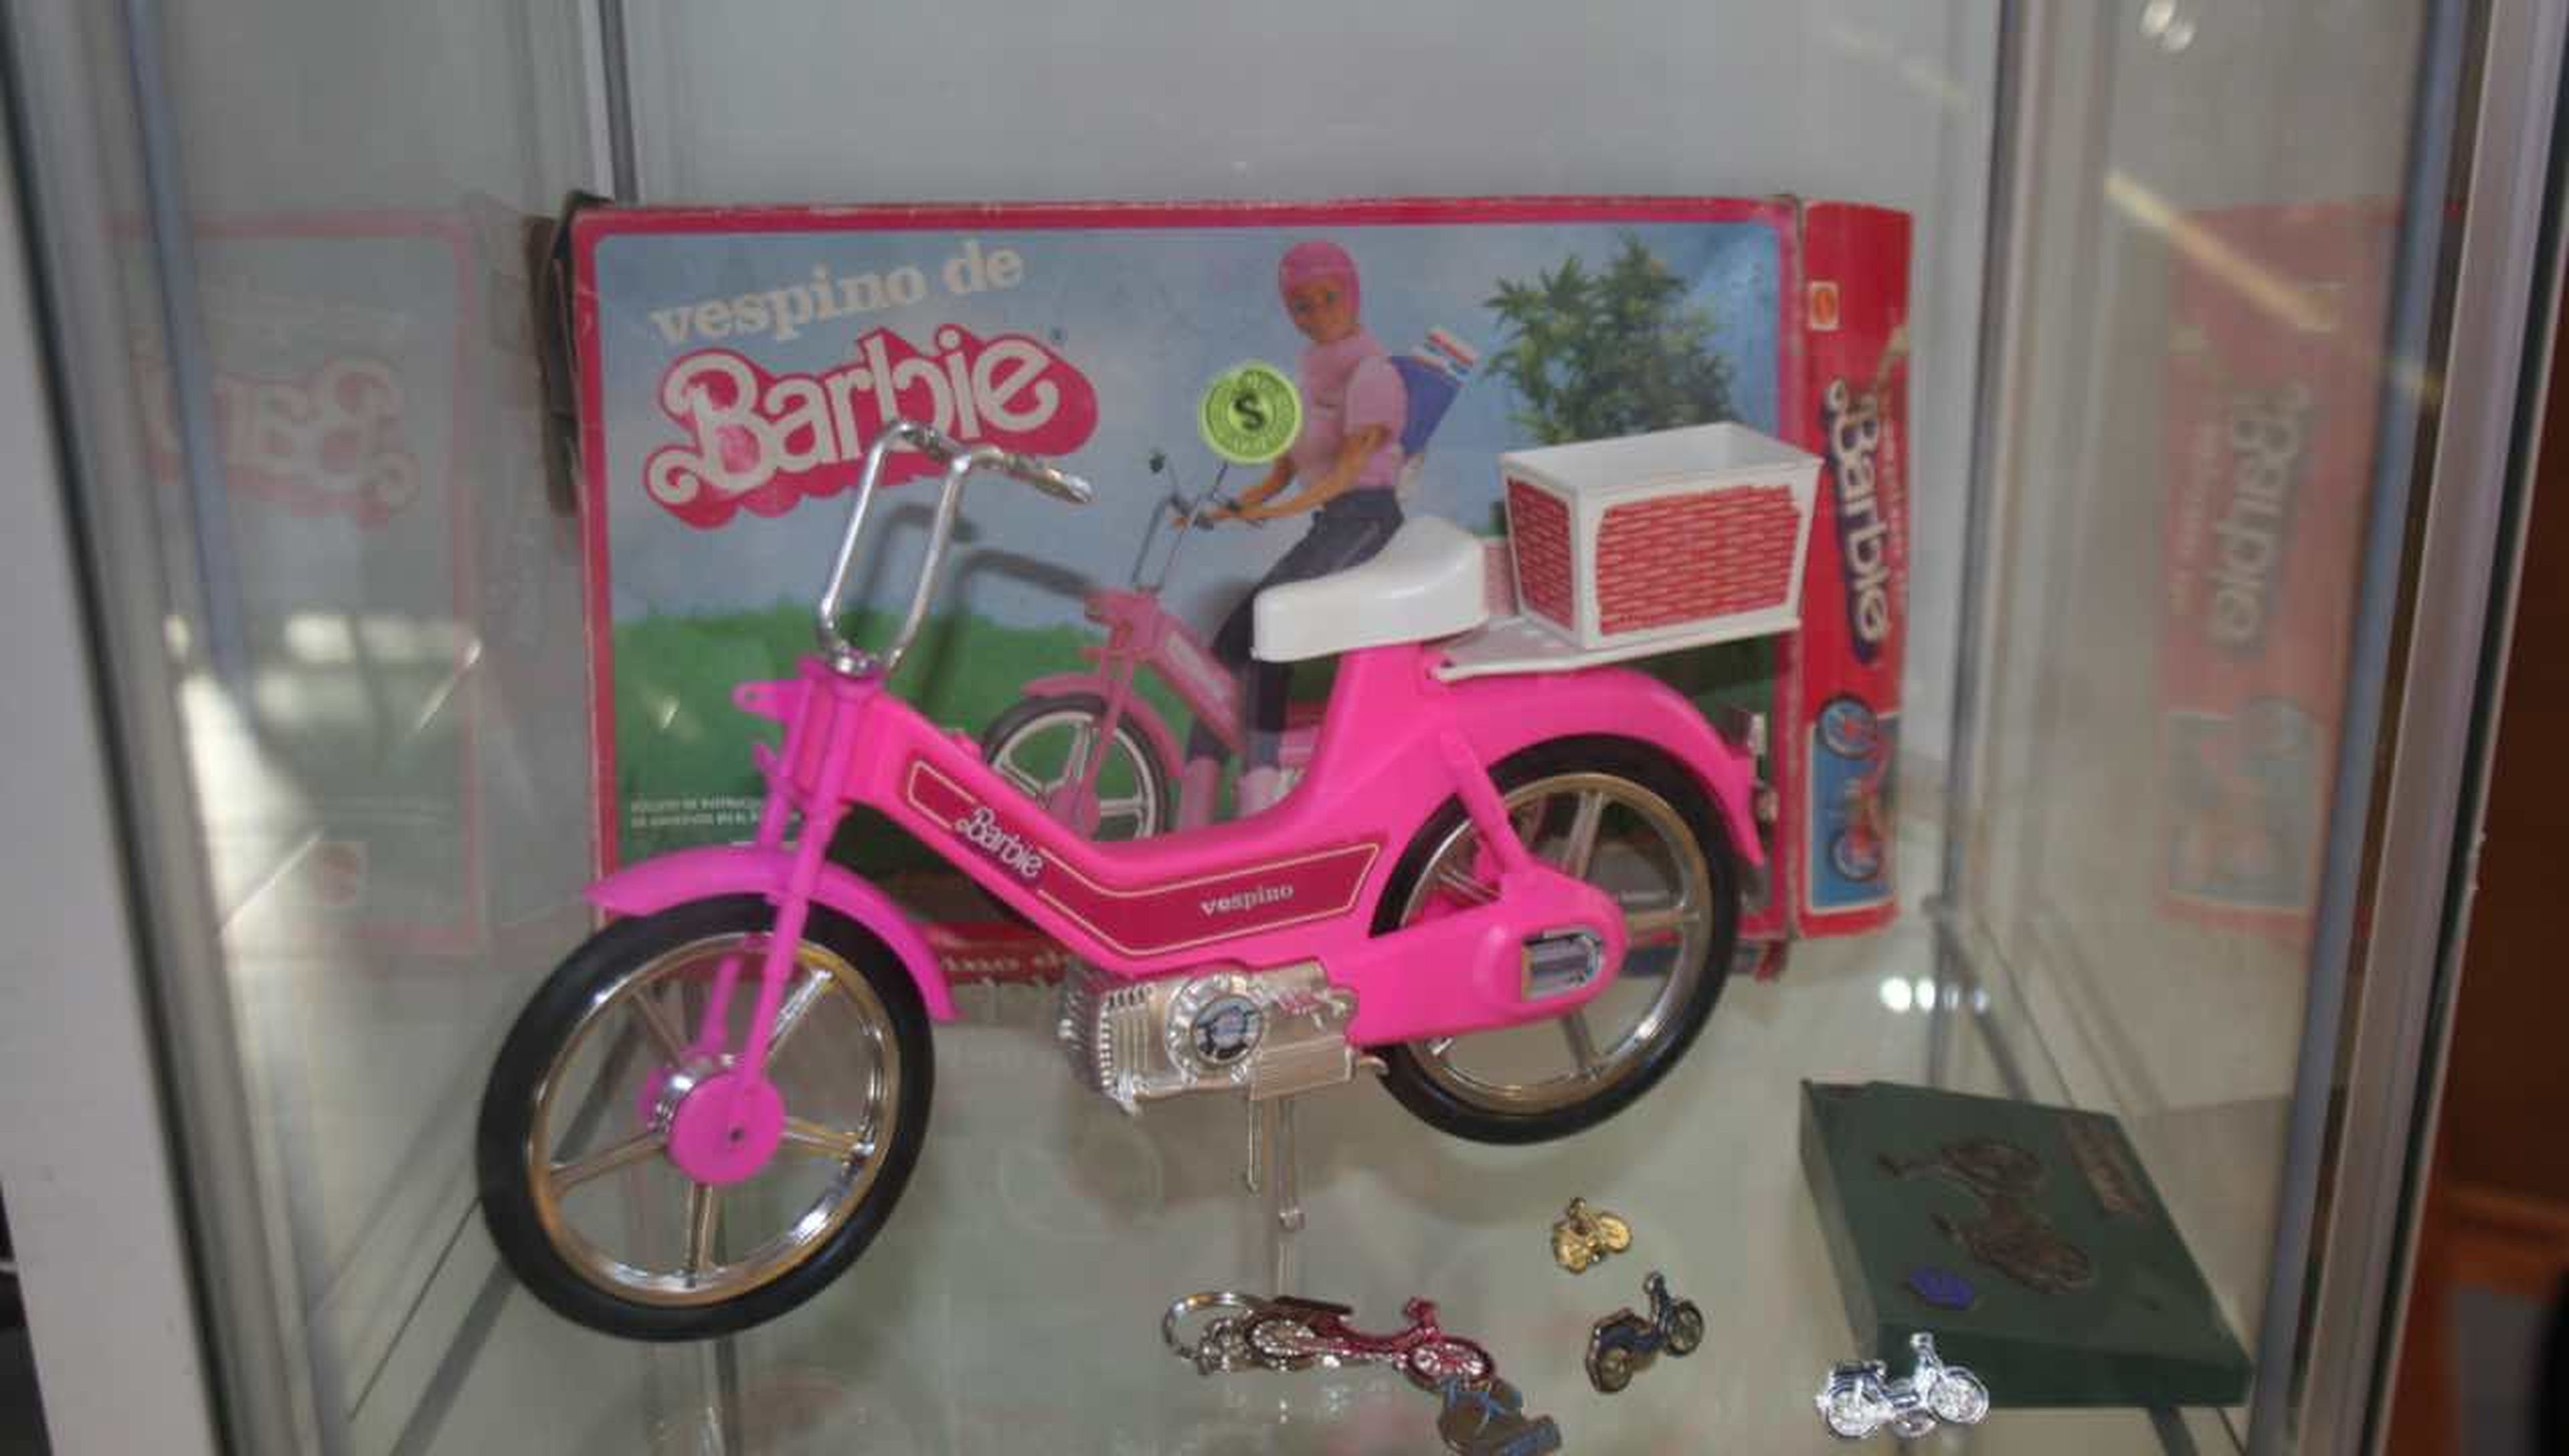 El Vespino de la Barbie